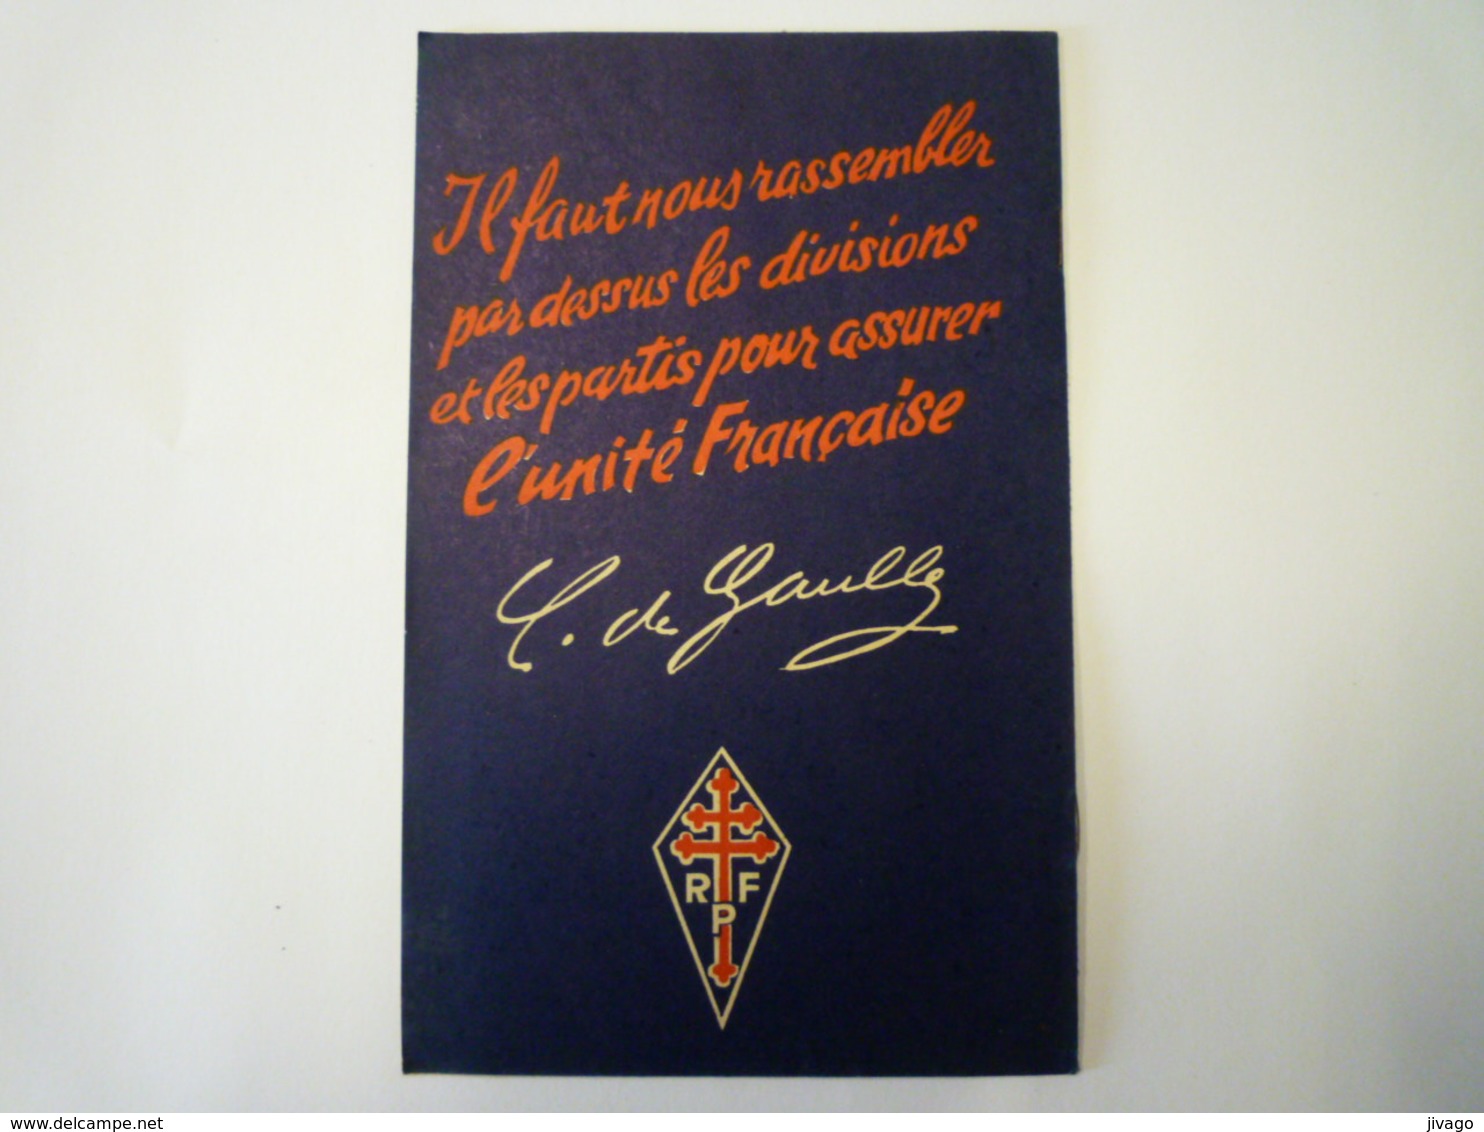 Charles  DE GAULLE  "La Liberté Menacée"   Brochure  RPF  1947  (8 Pages)   - Non Classés